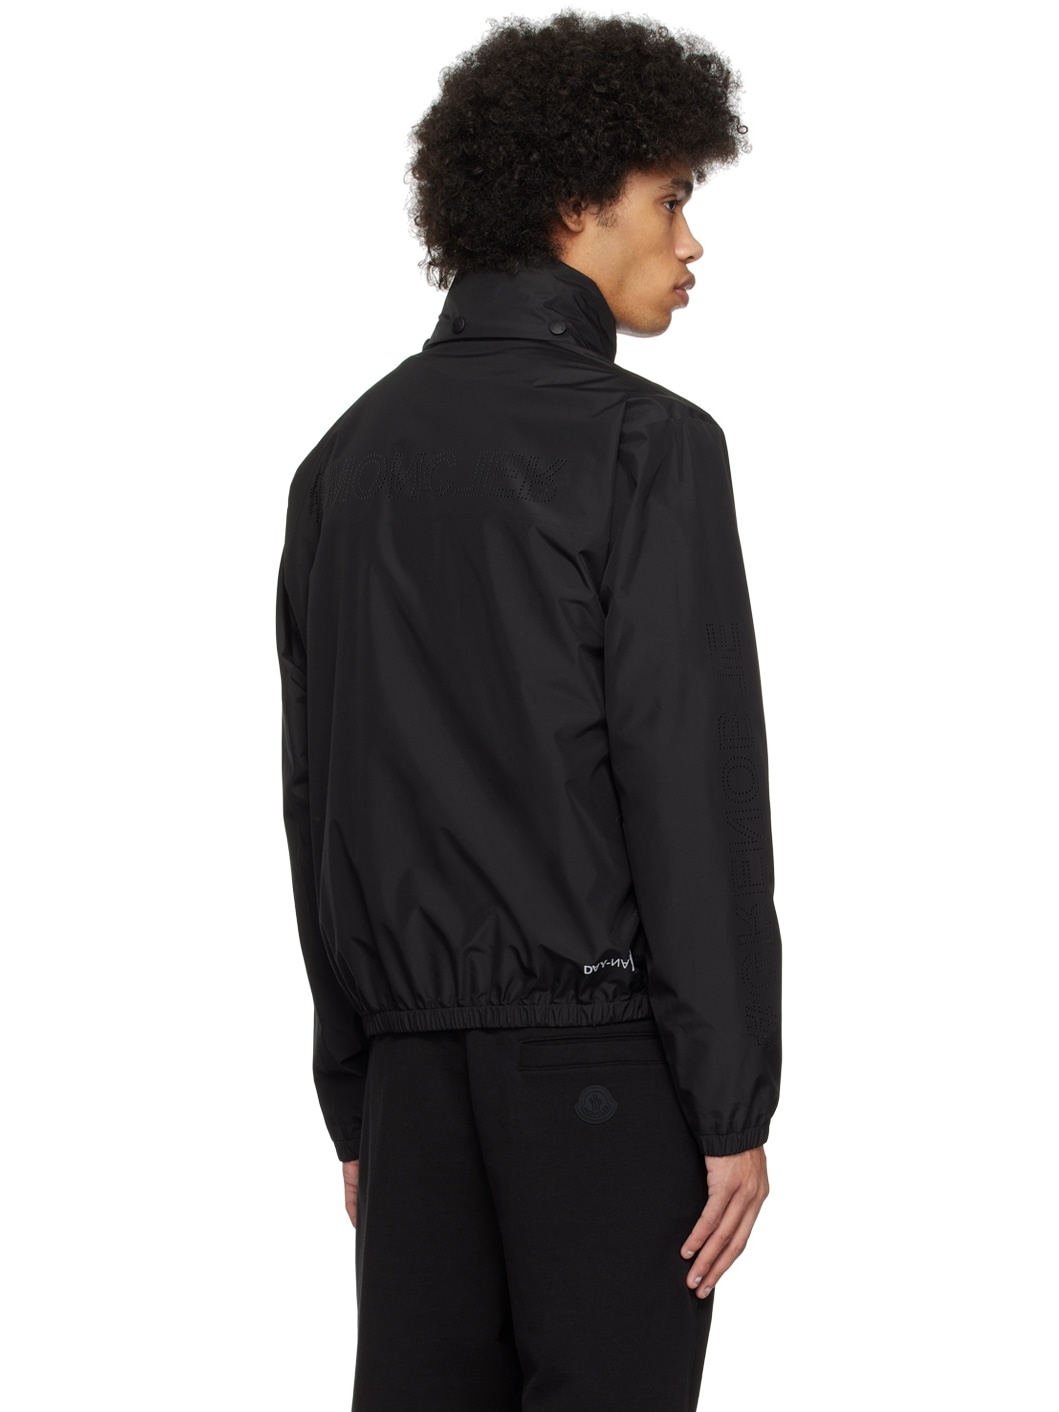 Black Zip jacket - 3